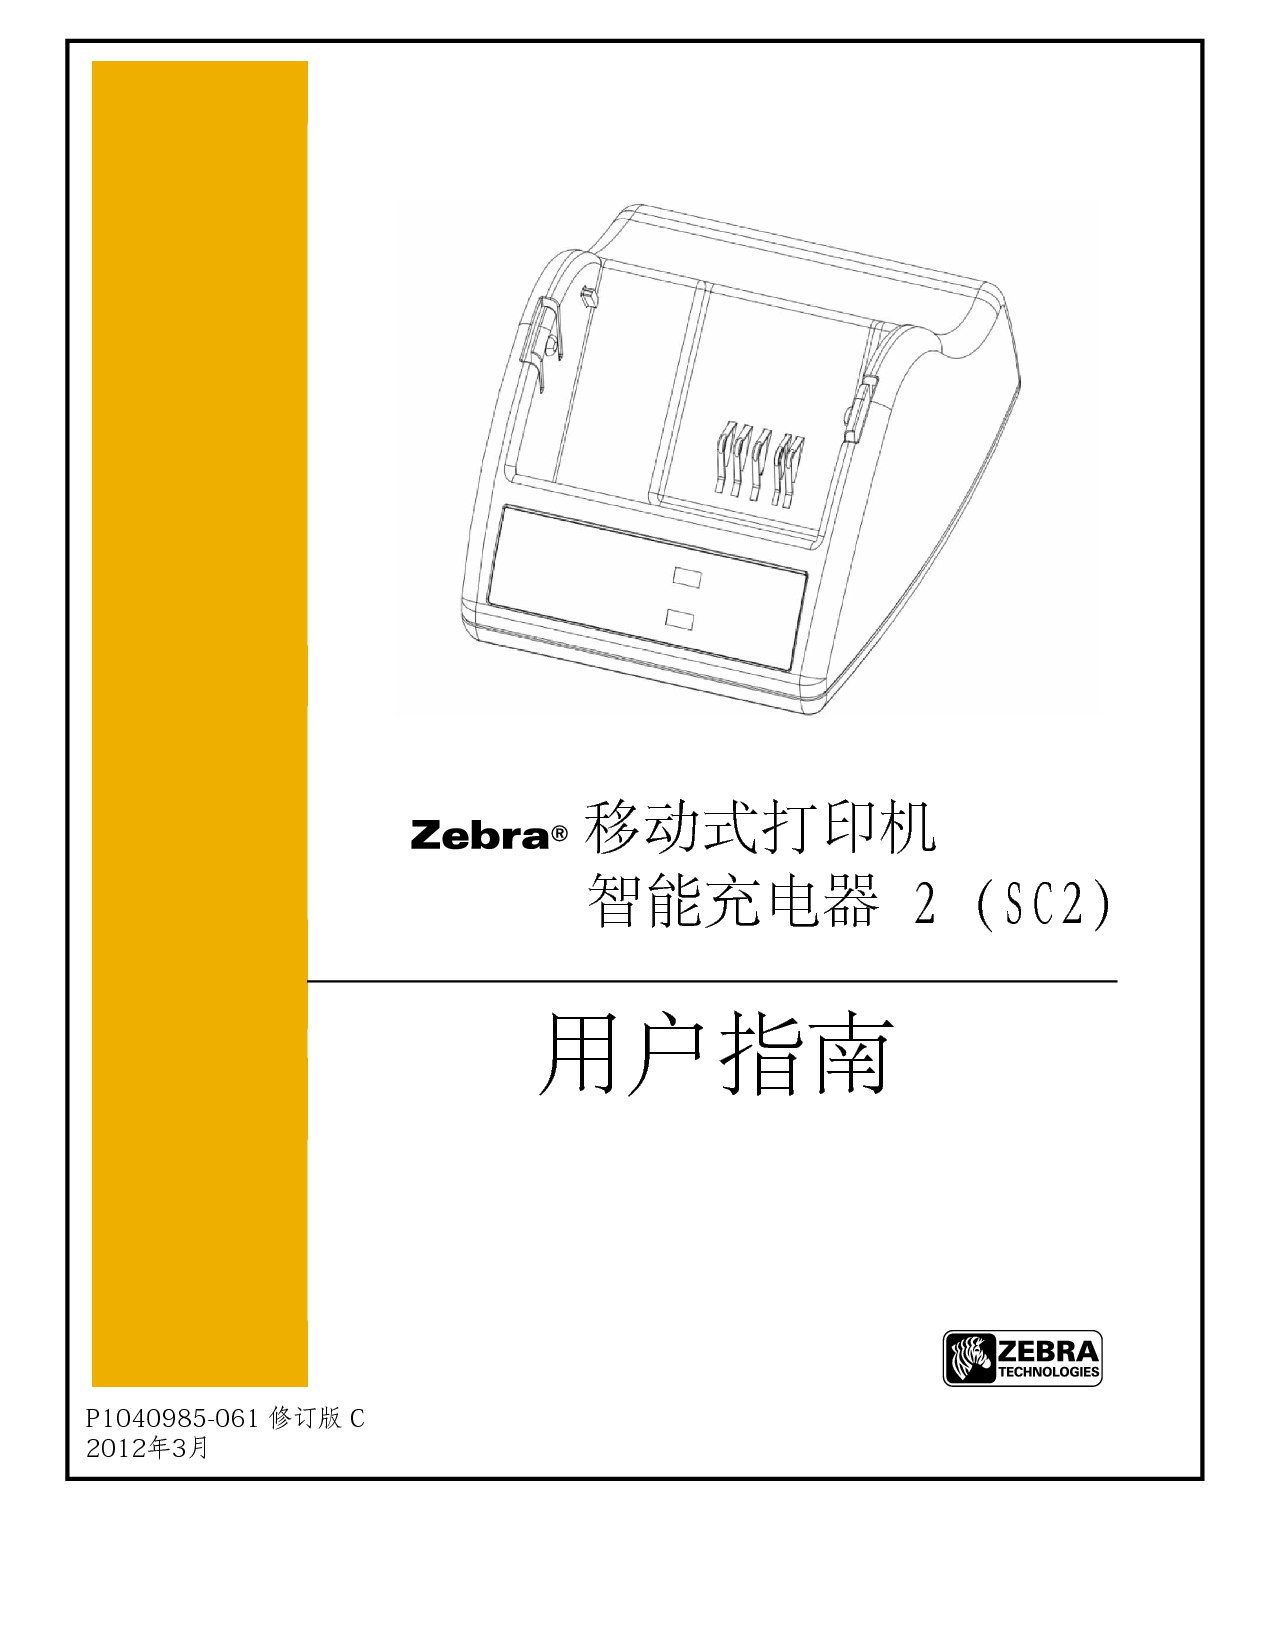 斑马 Zebra SC2 智能充电器 用户指南 封面